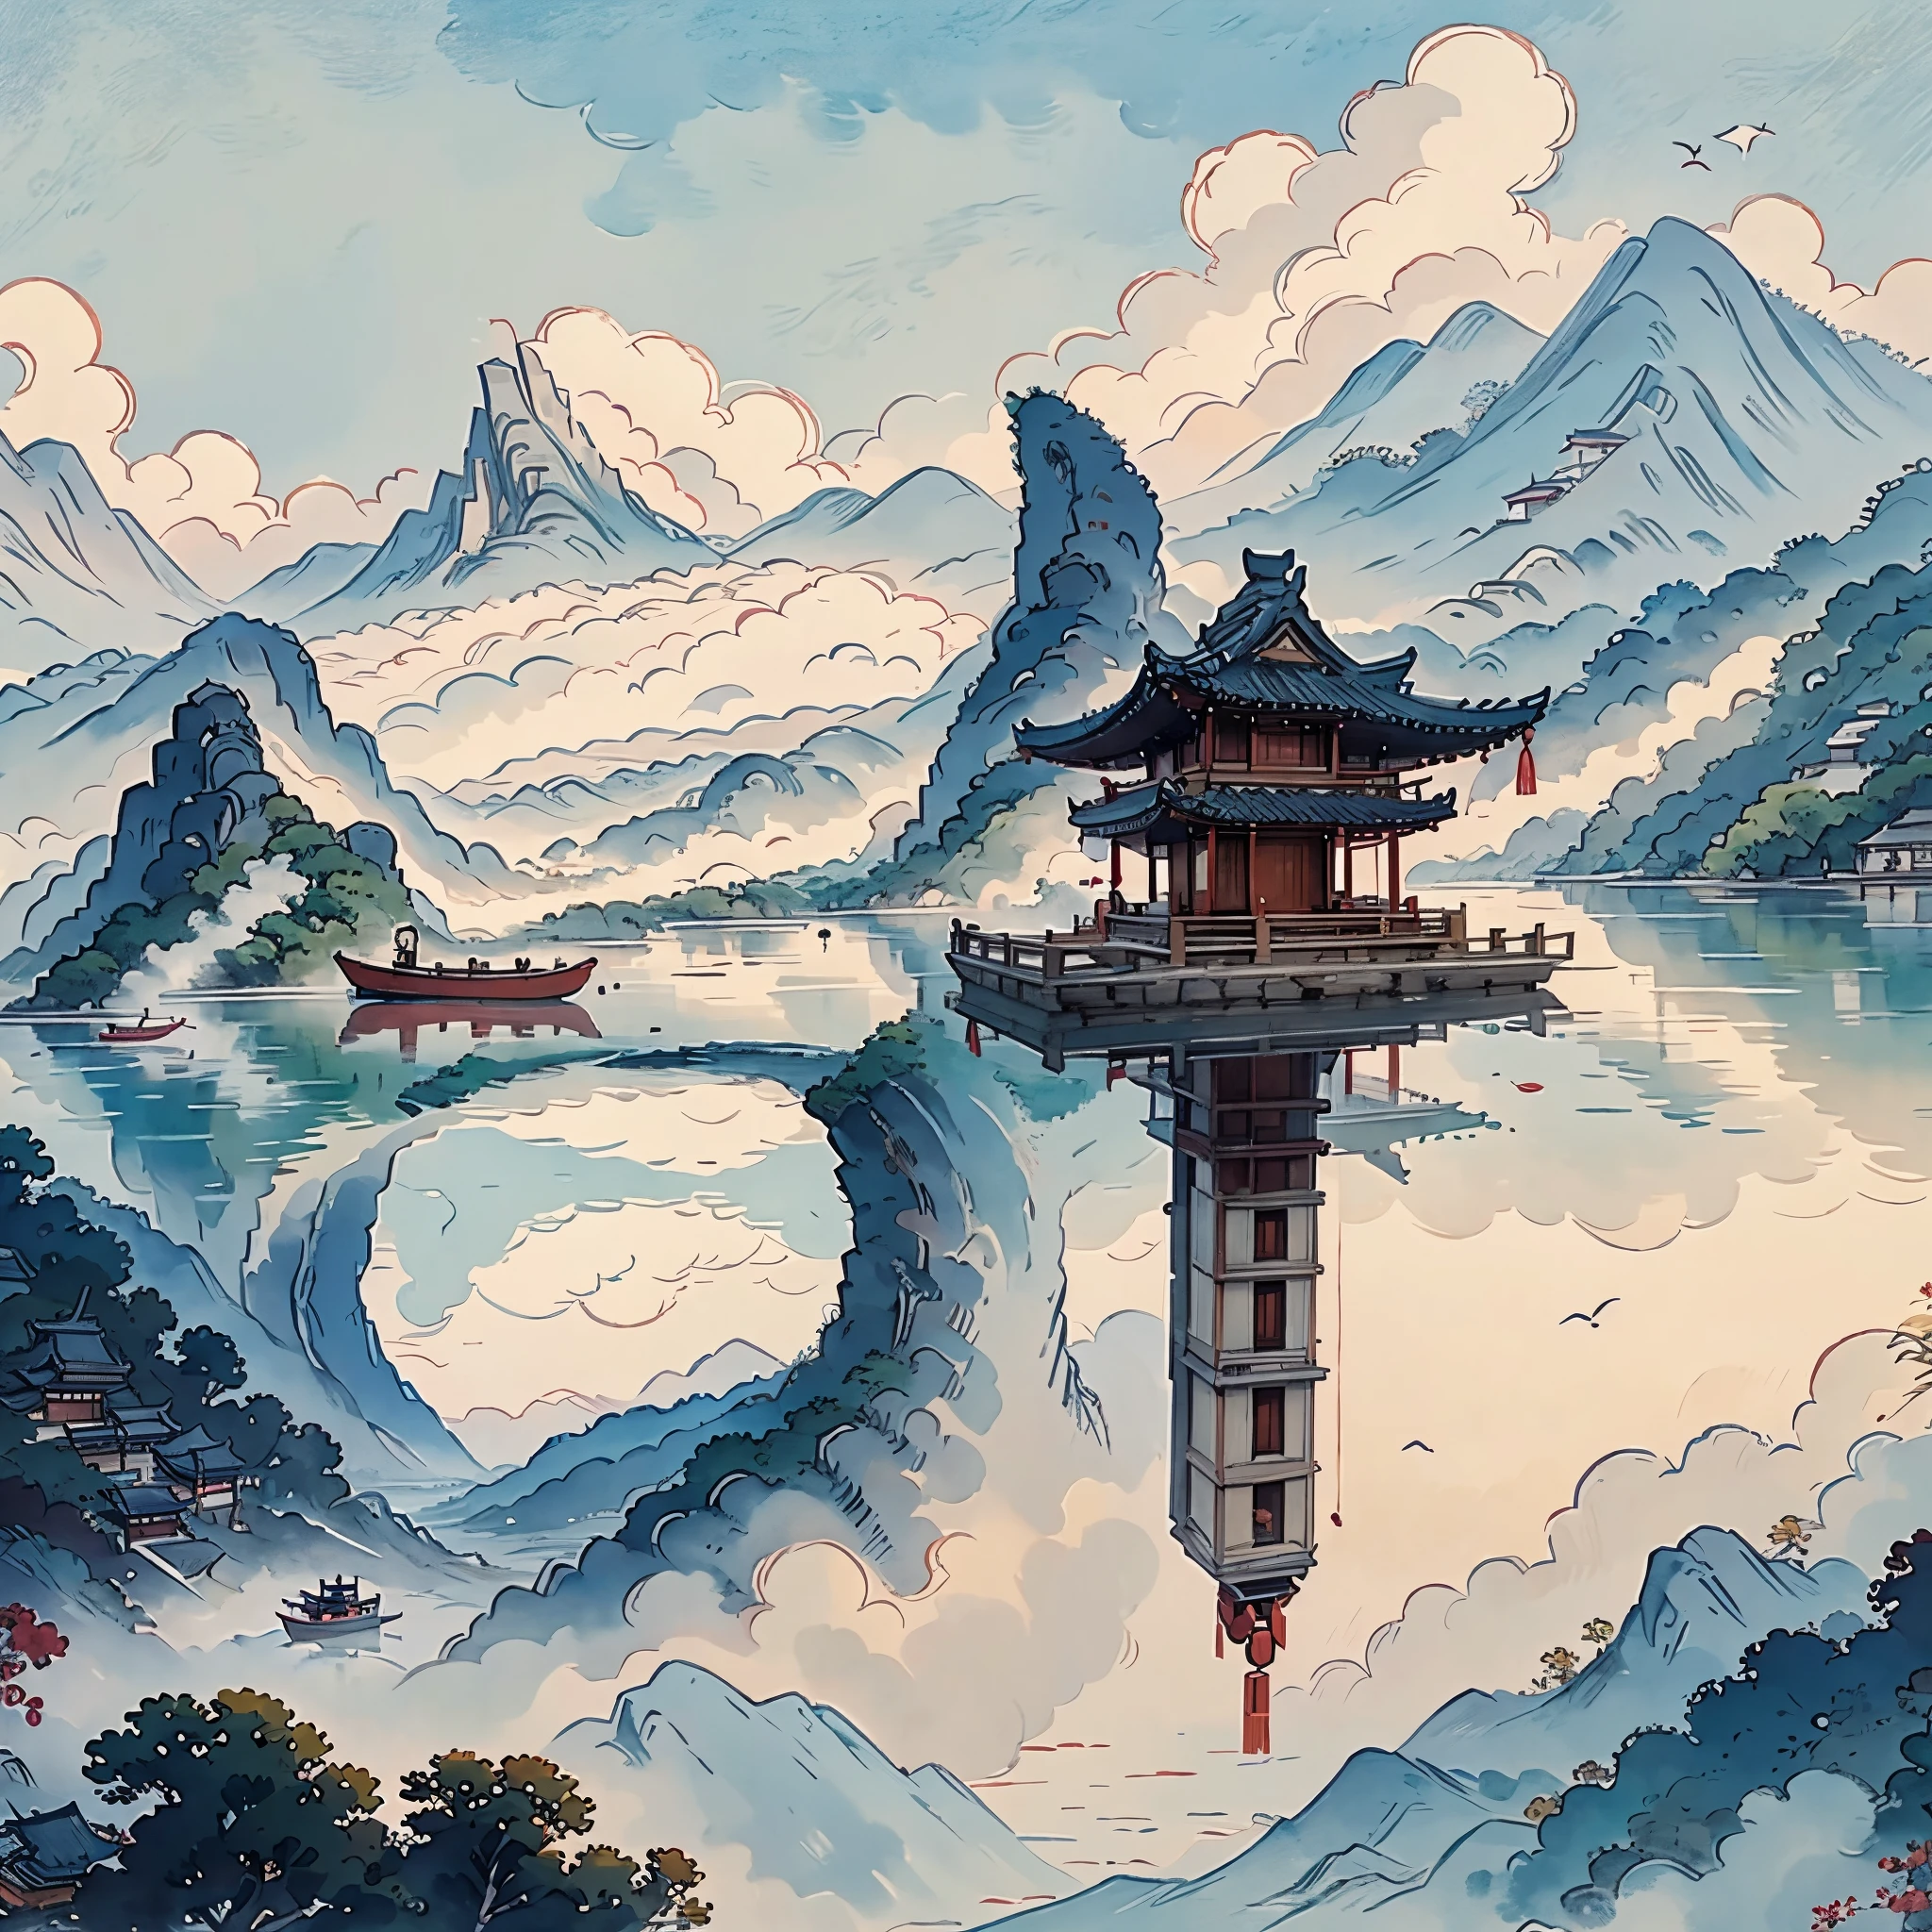 لوحة جبلية مع معبد على جزيرة صغيرة, نمط الألوان المائية الصينية, أسلوب الرسم الصيني, اللوحة الرقمية للمعبد, المناظر الطبيعية الصينية, الرسم بالألوان المائية الصينية التقليدية, اللوحات الصينية, أسلوب الفن الياباني, ألوان مائية عالية التفاصيل 8K, ألوان مائية مفصلة للغاية 8 ك, اللوحة التفصيلية 4 ك, مؤلف：الأبطال, اللوحة اليابانية, مؤلف：تشو ليل，الضوء والظلال